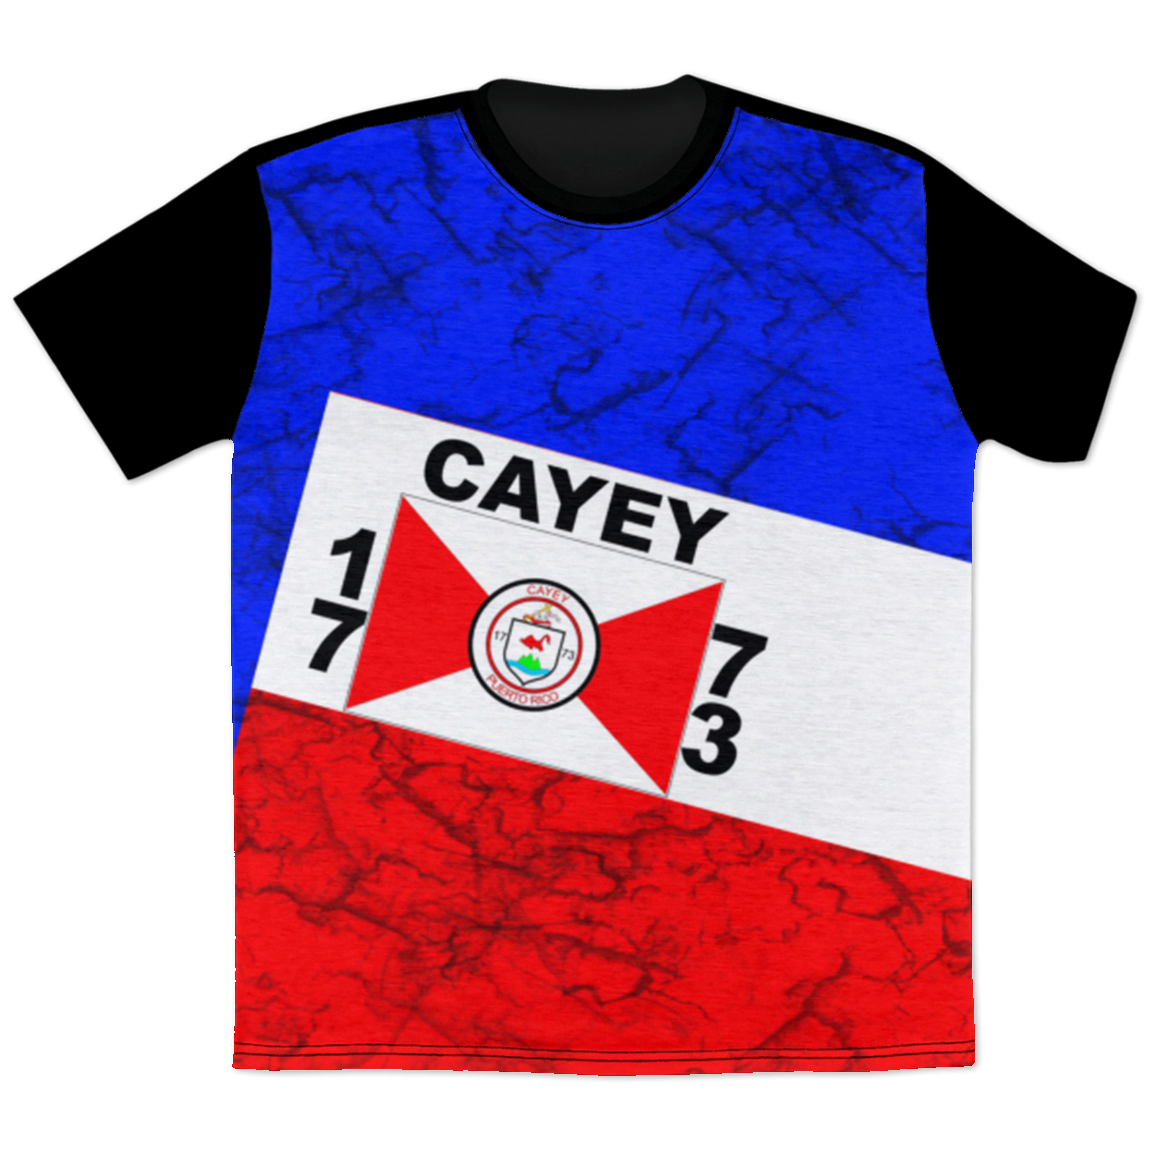 Cayey T-Shirt - Puerto Rican Pride